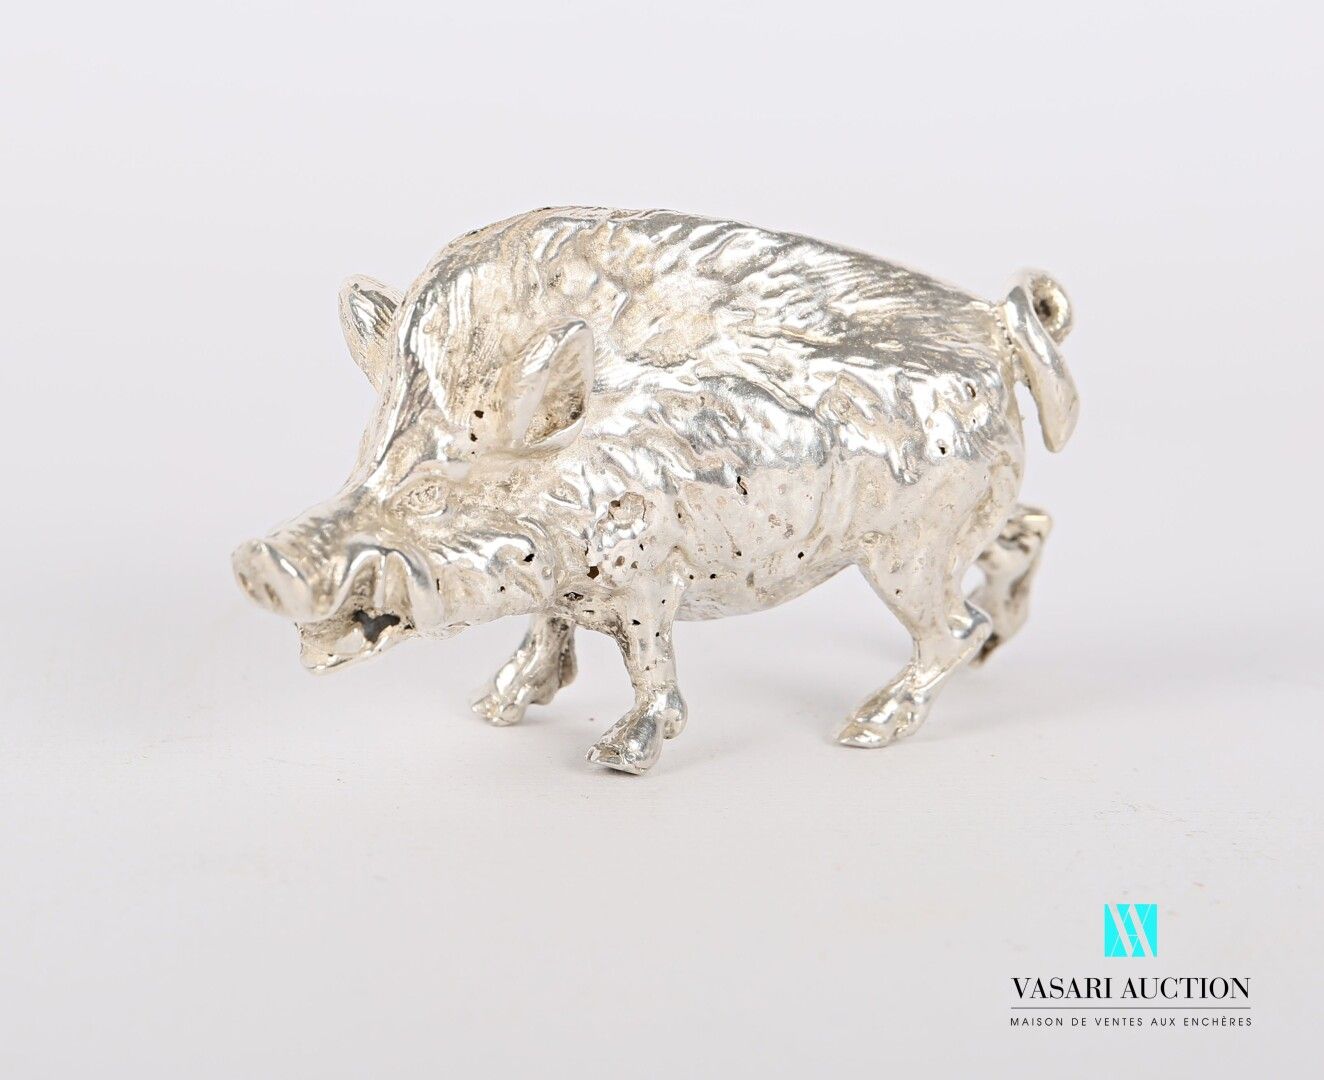 Null 代表野猪的银质主题。

重量：171.71克 - 高度：4厘米4 cm - 宽度 : 7 cm